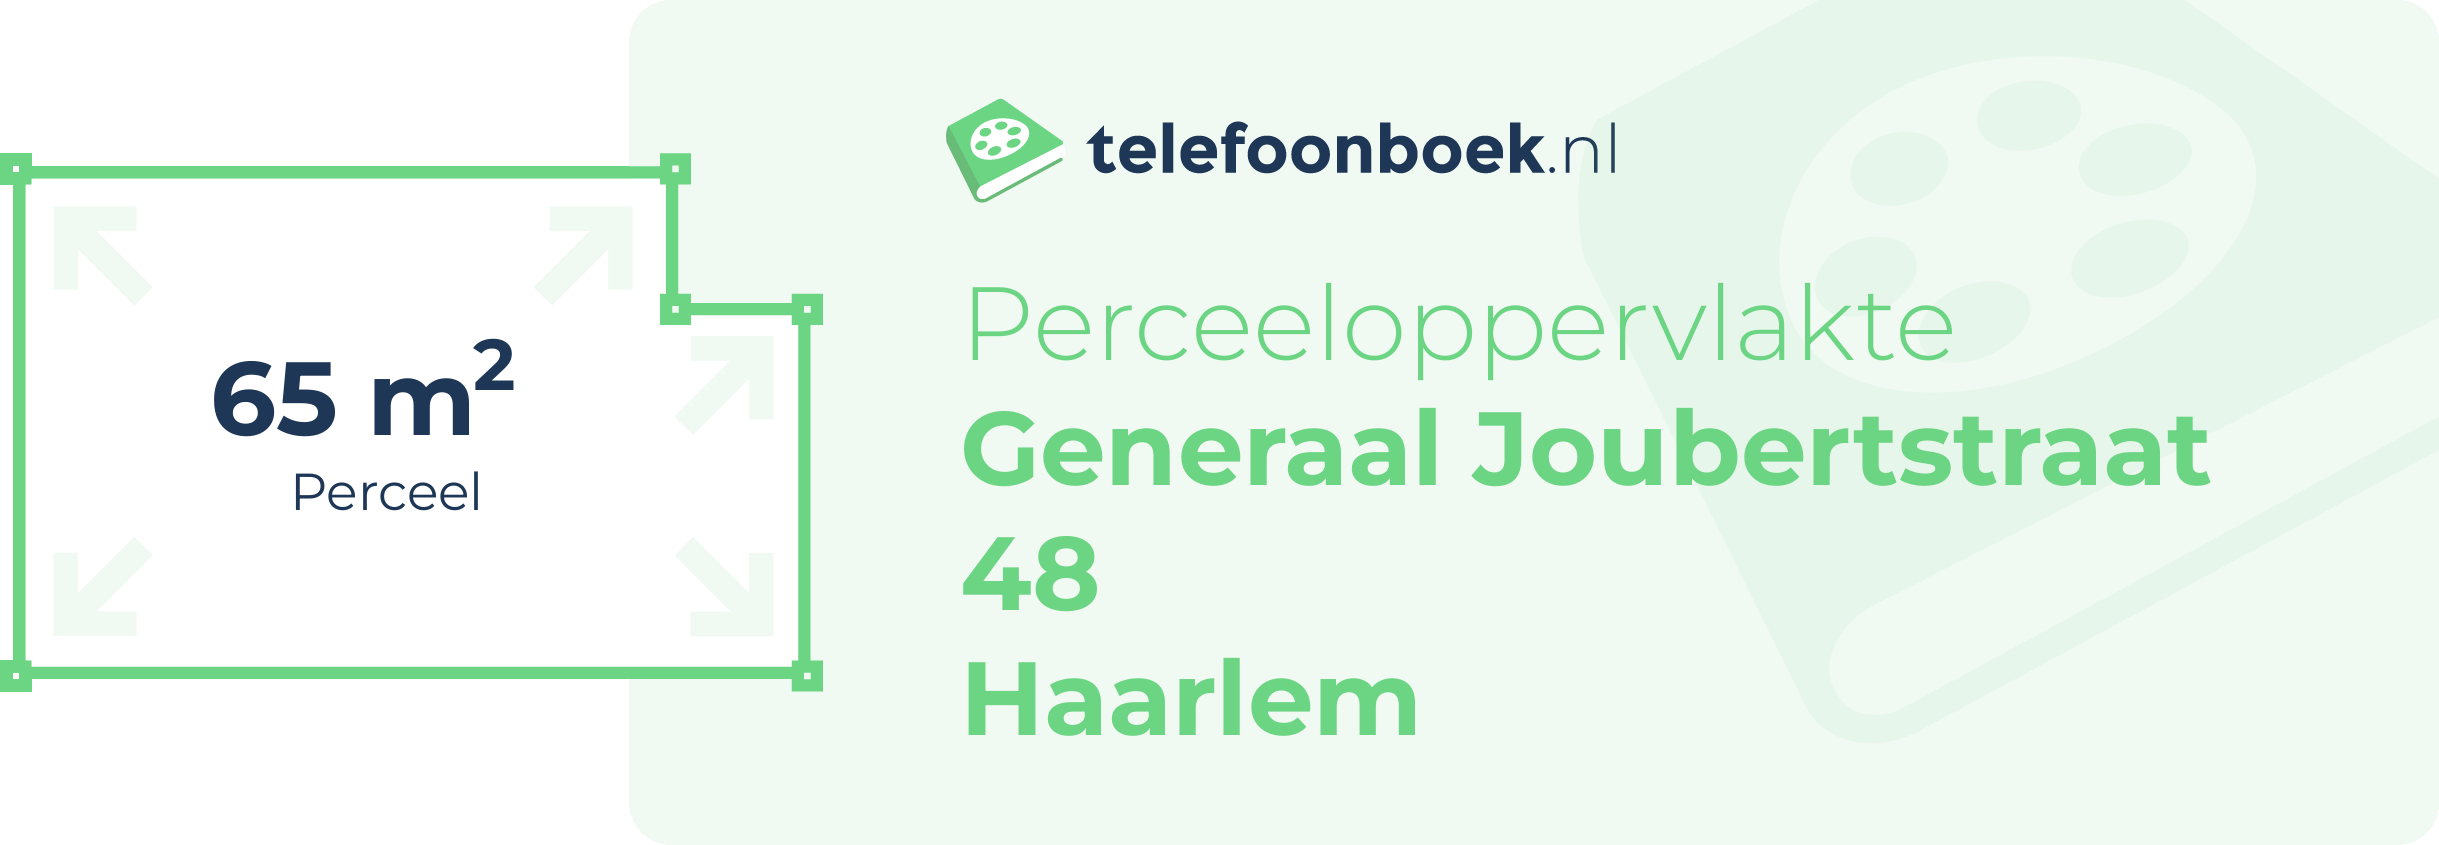 Perceeloppervlakte Generaal Joubertstraat 48 Haarlem